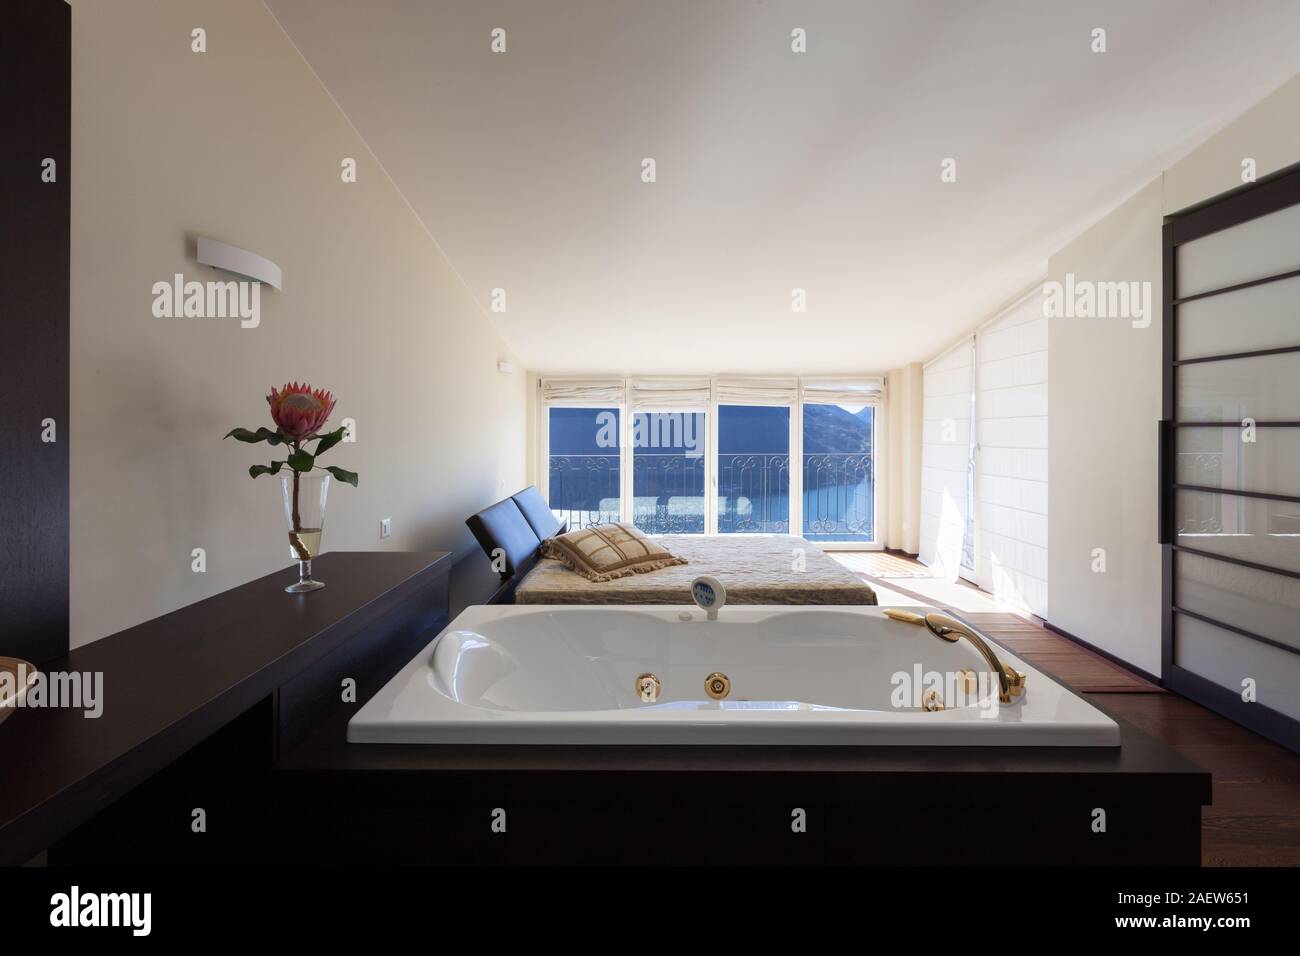 L'architecture, l'intérieur de maison moderne, chambre à coucher avec une baignoire pour deux personnes. L'espace ouvert Banque D'Images